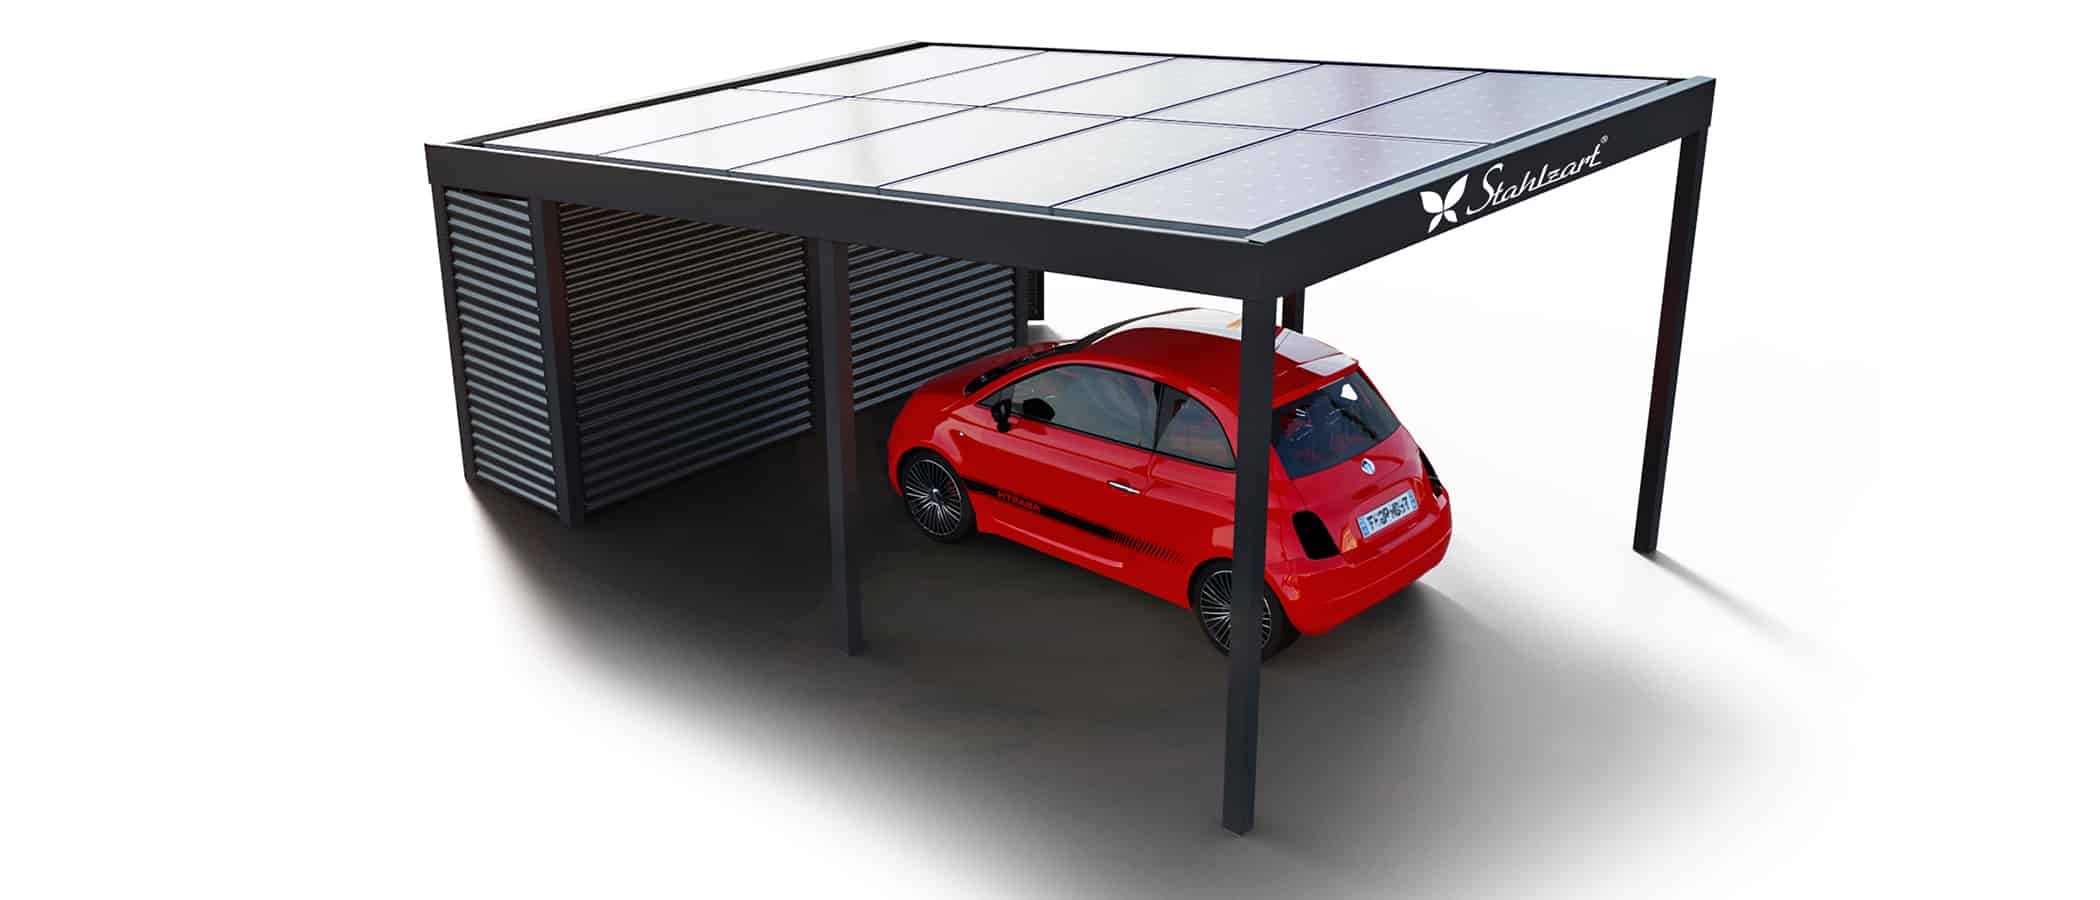 solar-carport-mit-pultdach-carports-solarcarport-pultdach-carportdach-design-strom-angebot-photovoltaikanlage-module-solardach-metall-stahl-einzelcarport-mit-geraeteraum-anthrazit-stahlzart